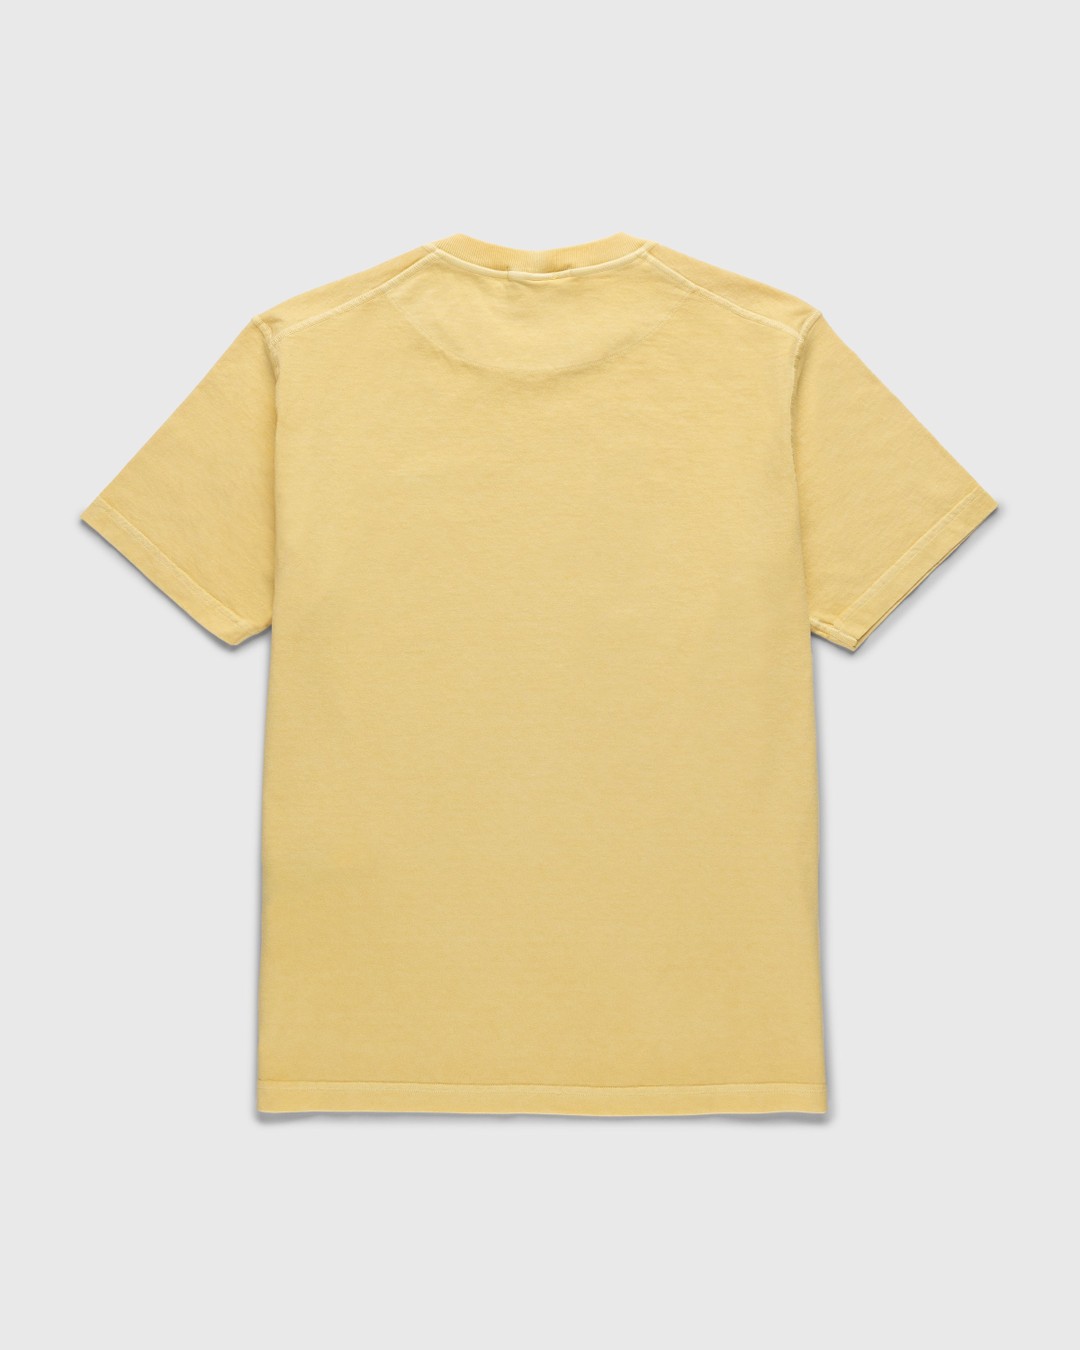 Stone Island – Fissato T-Shirt Butter - T-Shirts - Yellow - Image 2